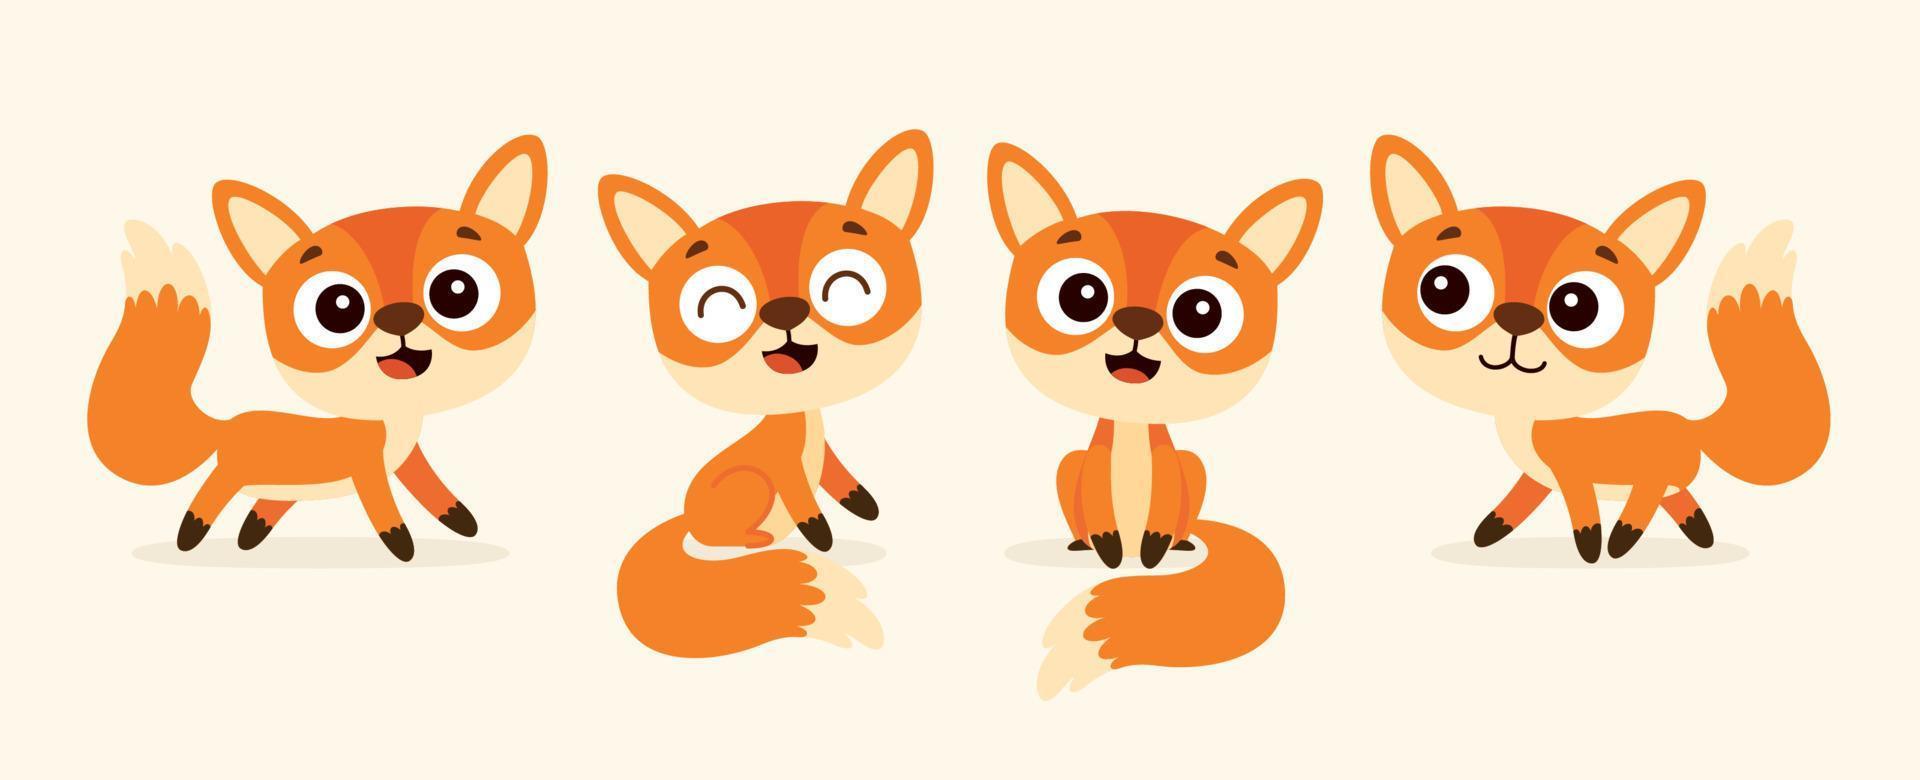 Cartoon-Zeichnung eines Fuchses vektor